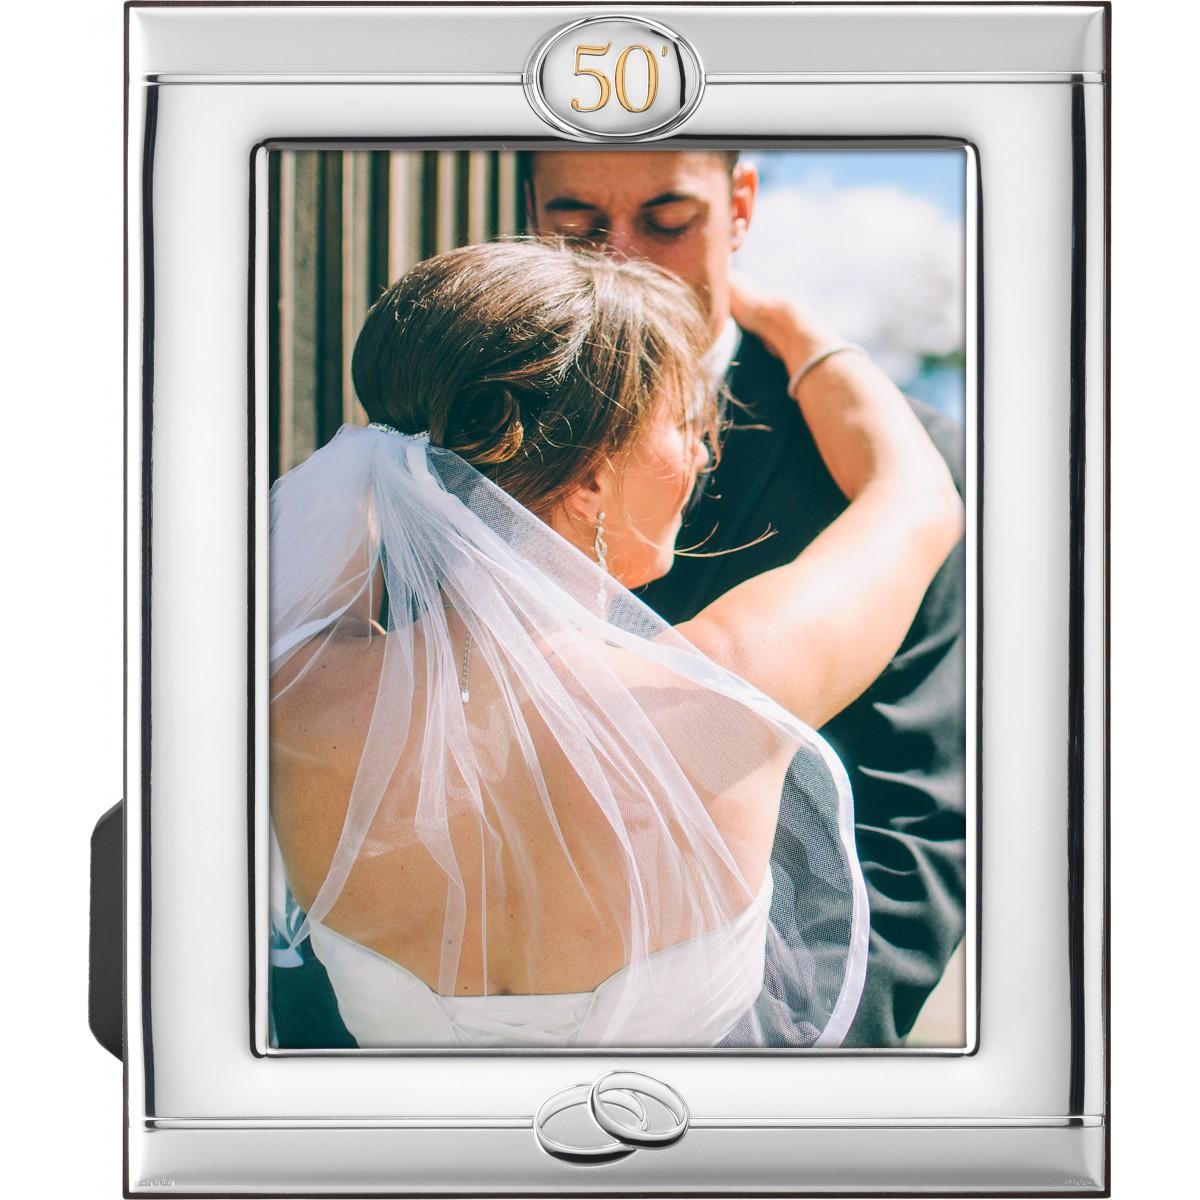 portafoto-marco-foto-plata-bilaminado-20x25-deamsa-50-aniversario-bodas-oro-regalo-aniversario-lomejorsg.jpg